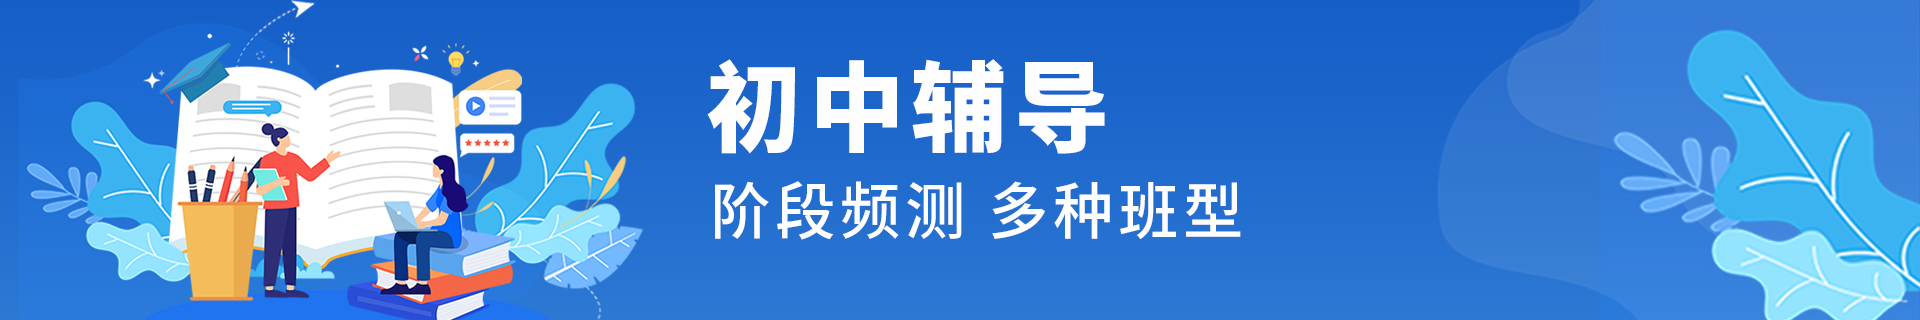 郑州中原区励学个性化教育机构